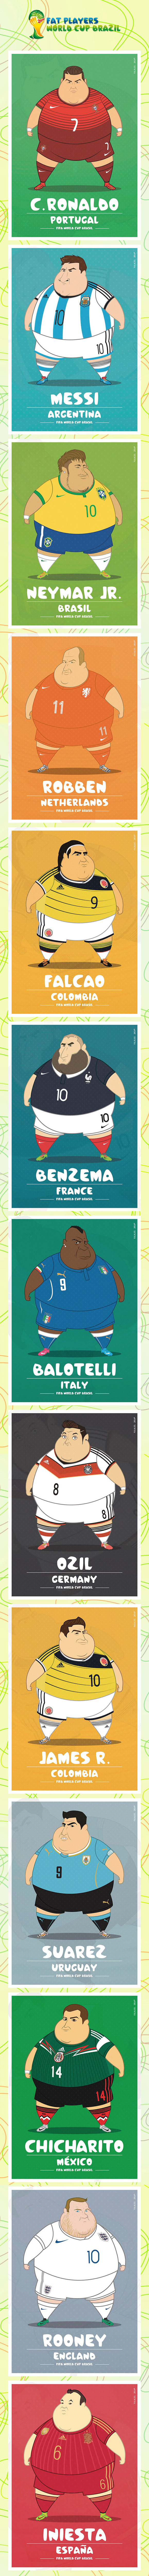 Mundial Brasil 2014. Jugadores de fútbol gordos